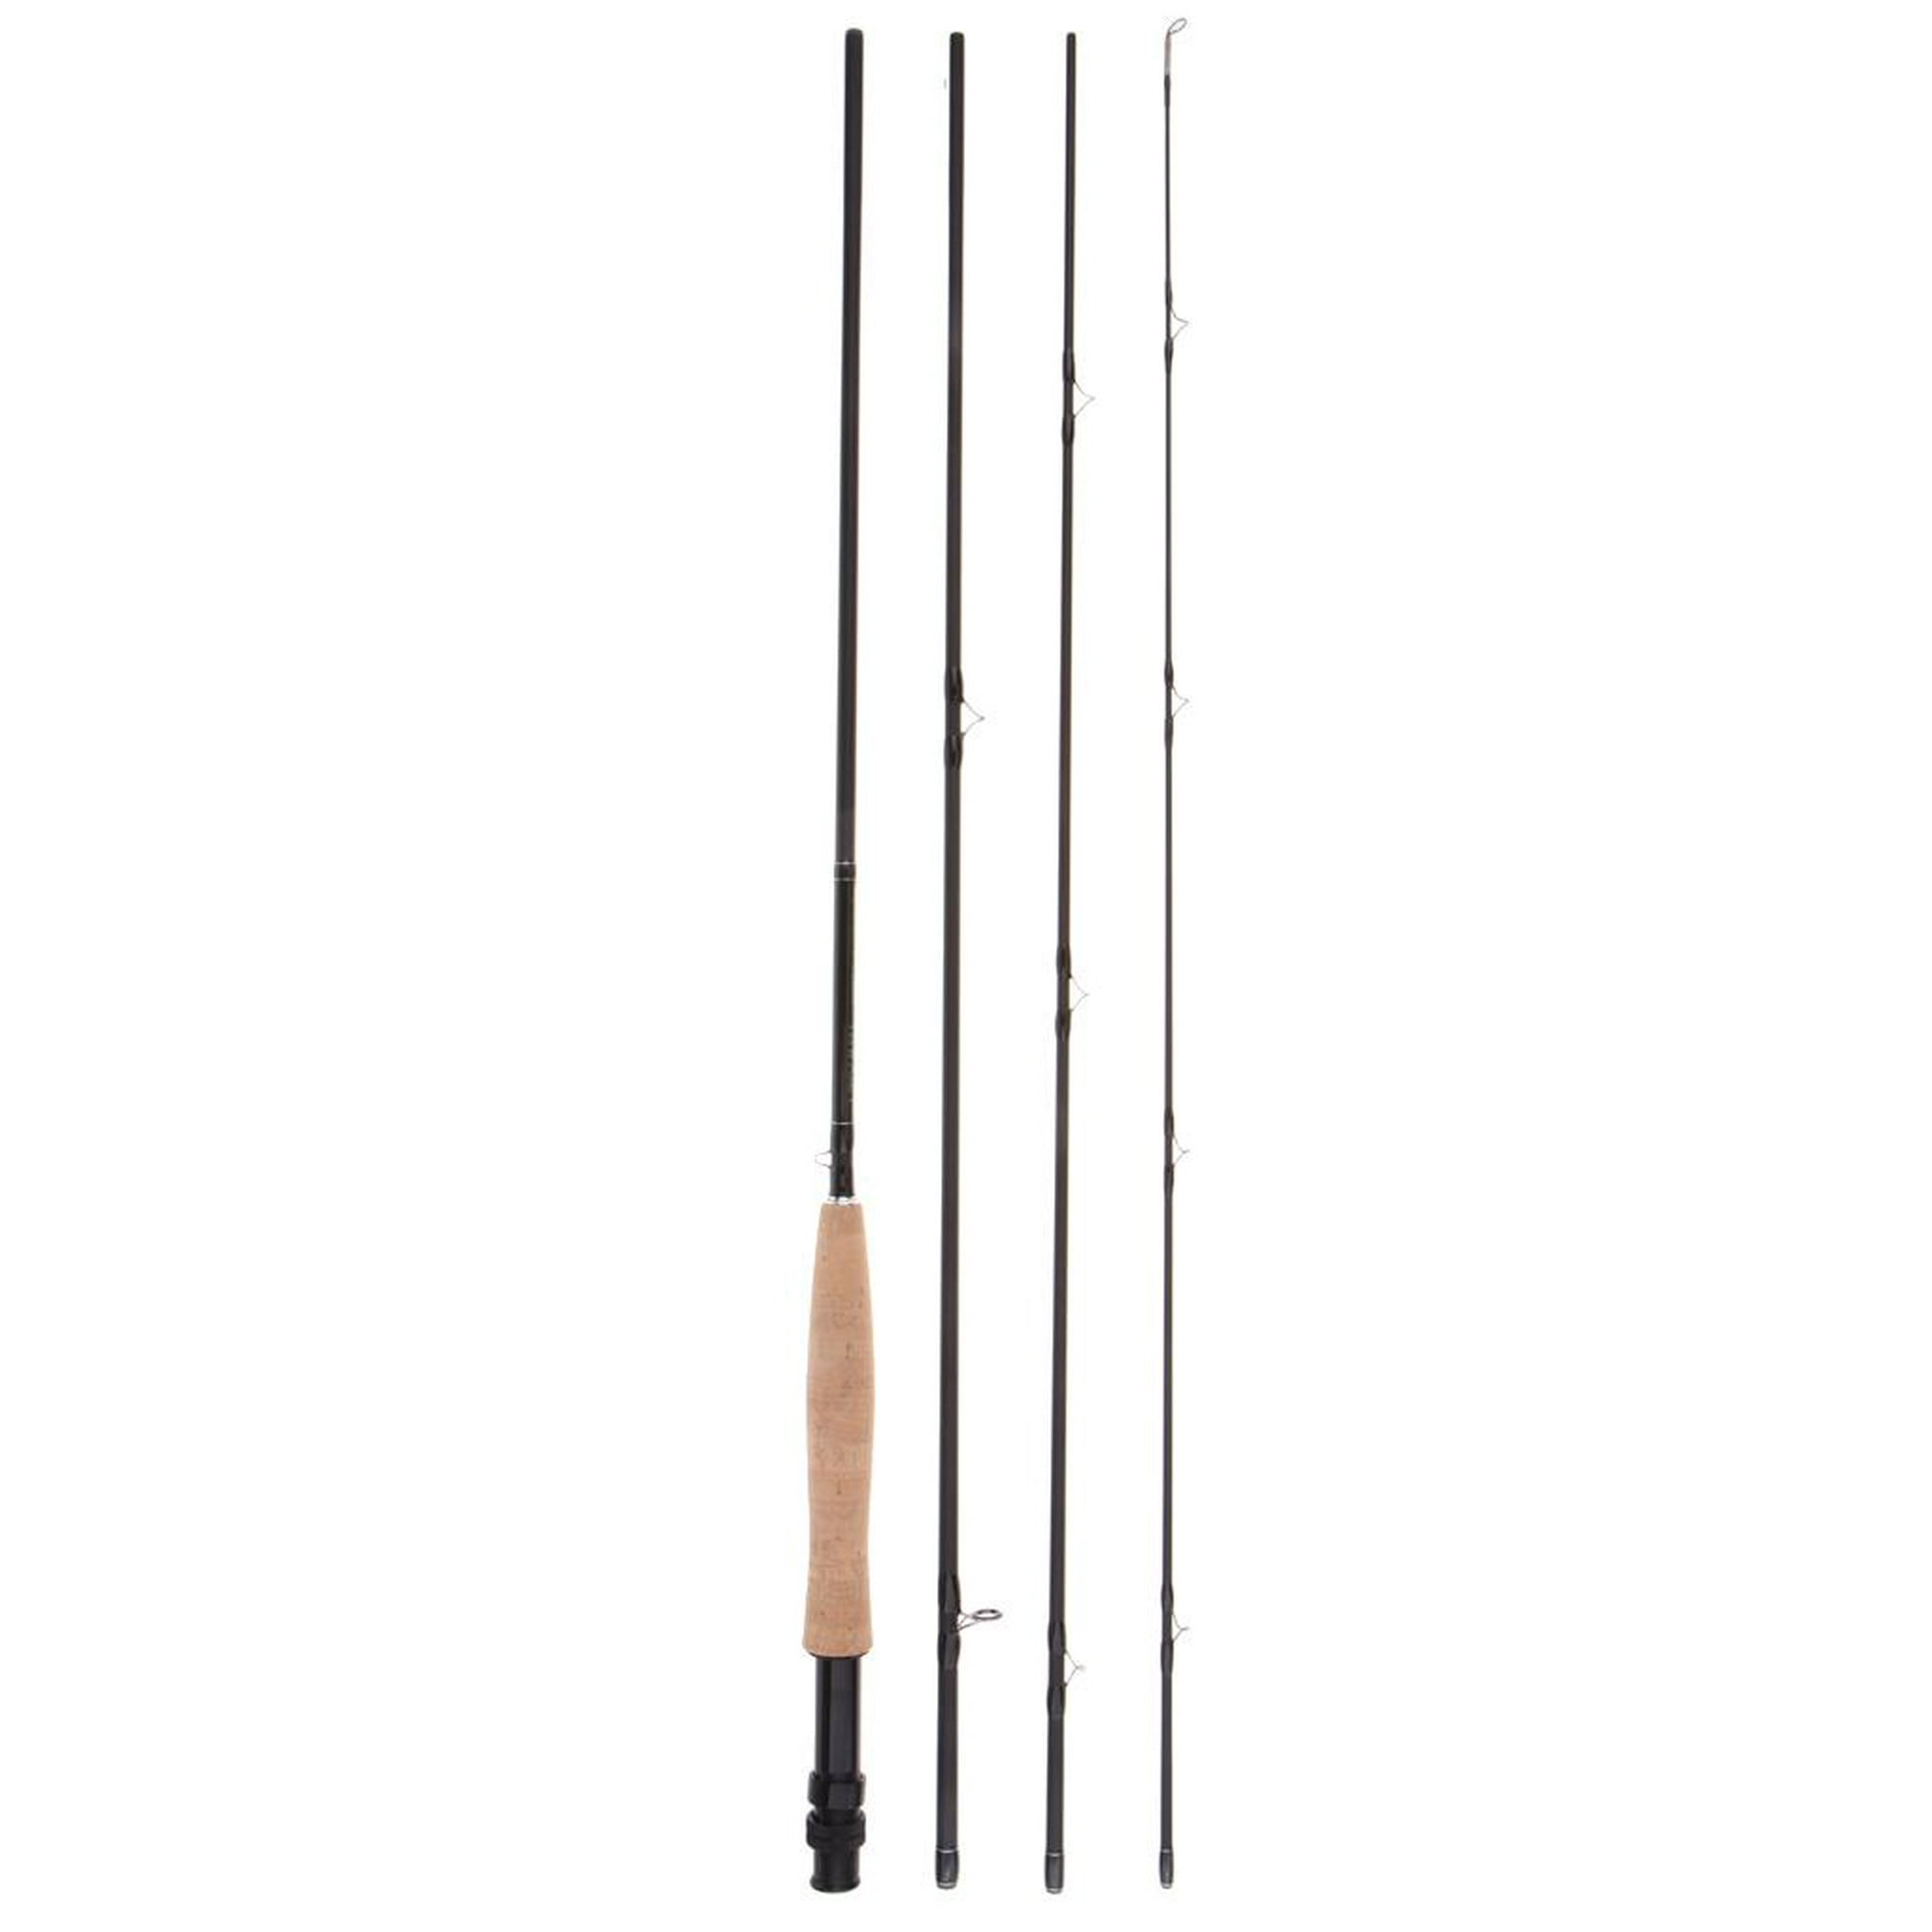 Fibras de carbono Cañas de pescar Lure Rods Telescopic Poles 12-25lbs 2.4m  Cola Caña de pescar giratoria